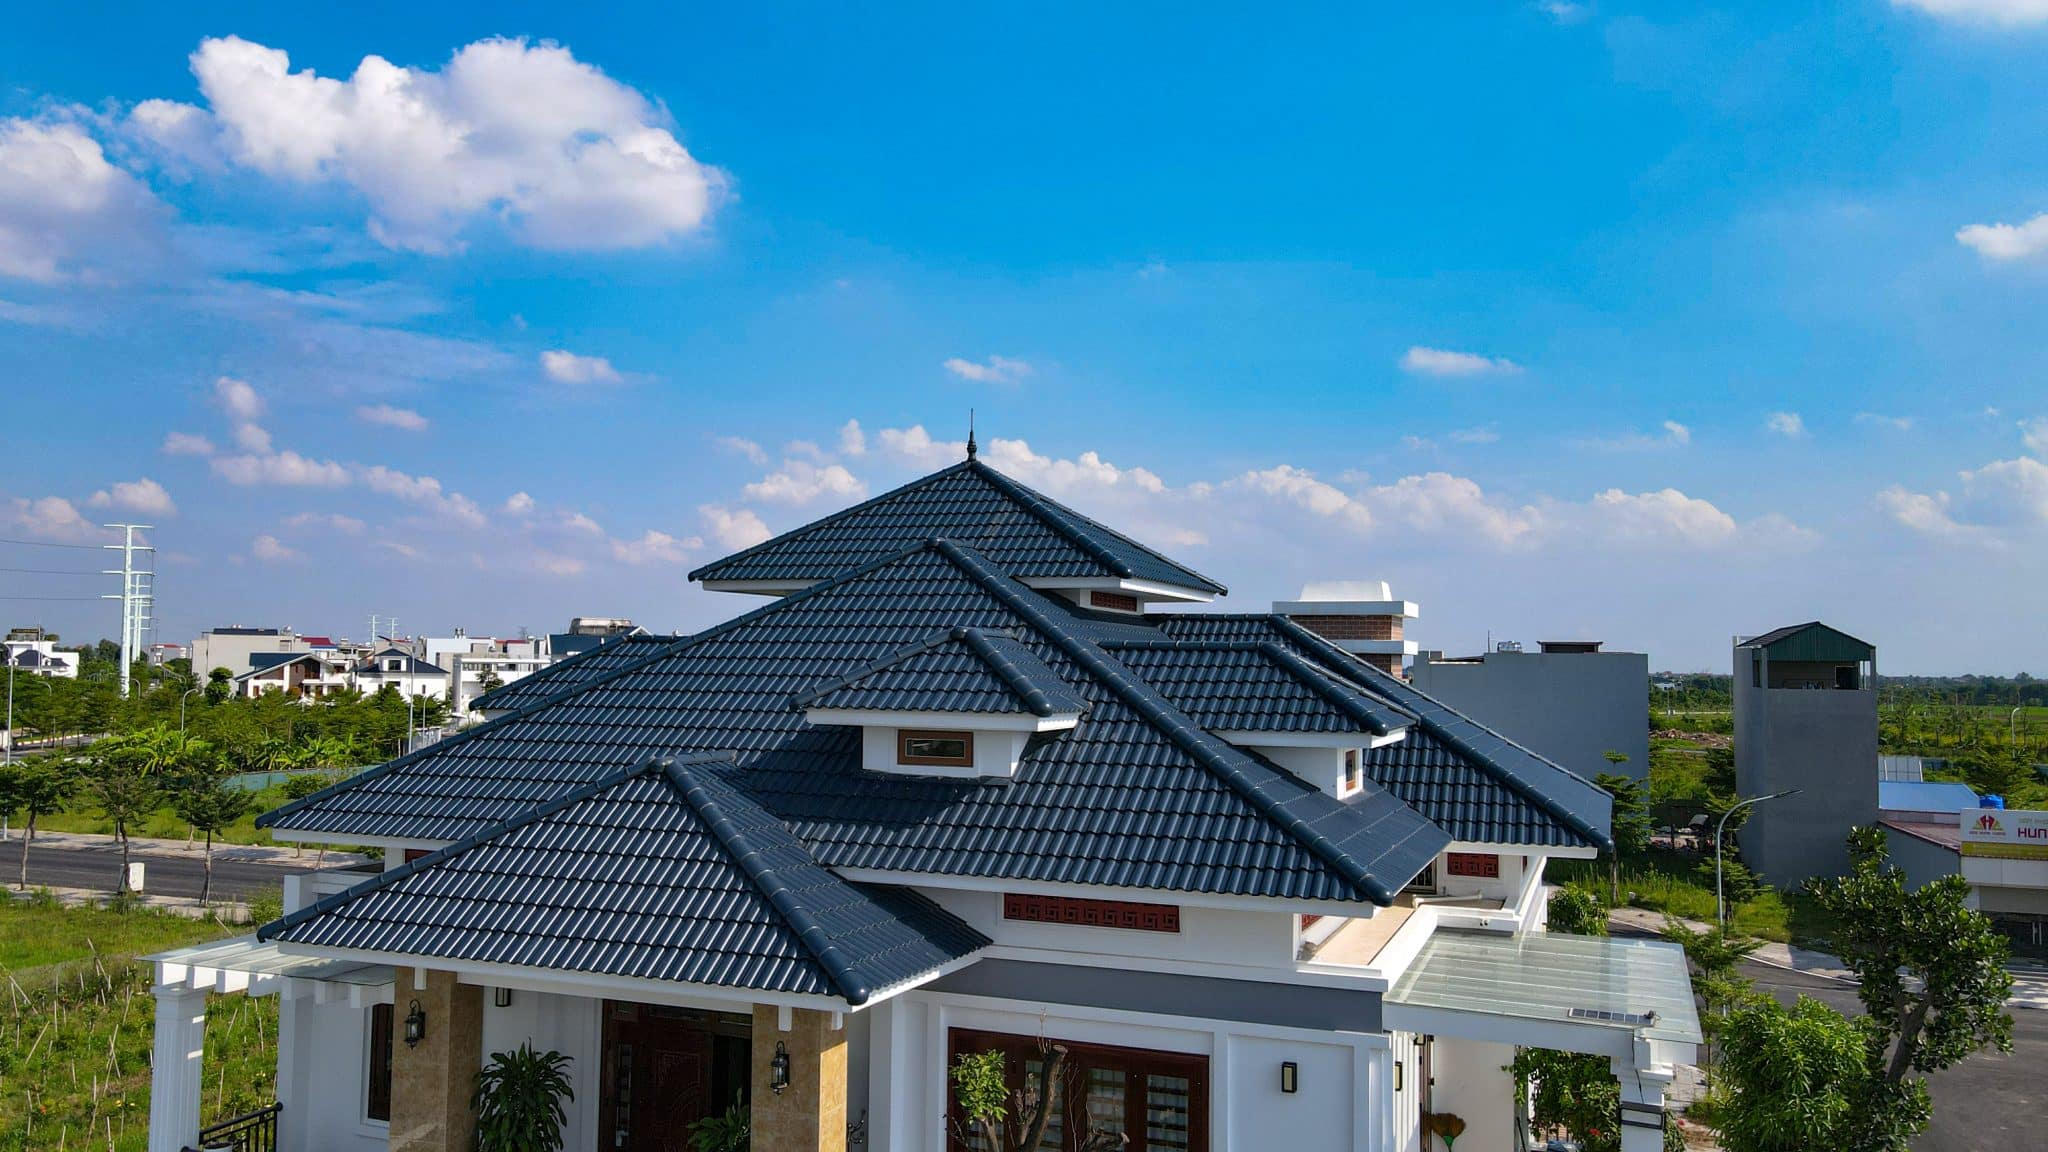 Lựa chọn lợp loại ngói màu xanh đen luôn là sự lựa chọn hoàn hảo cho mái nhà của bạn